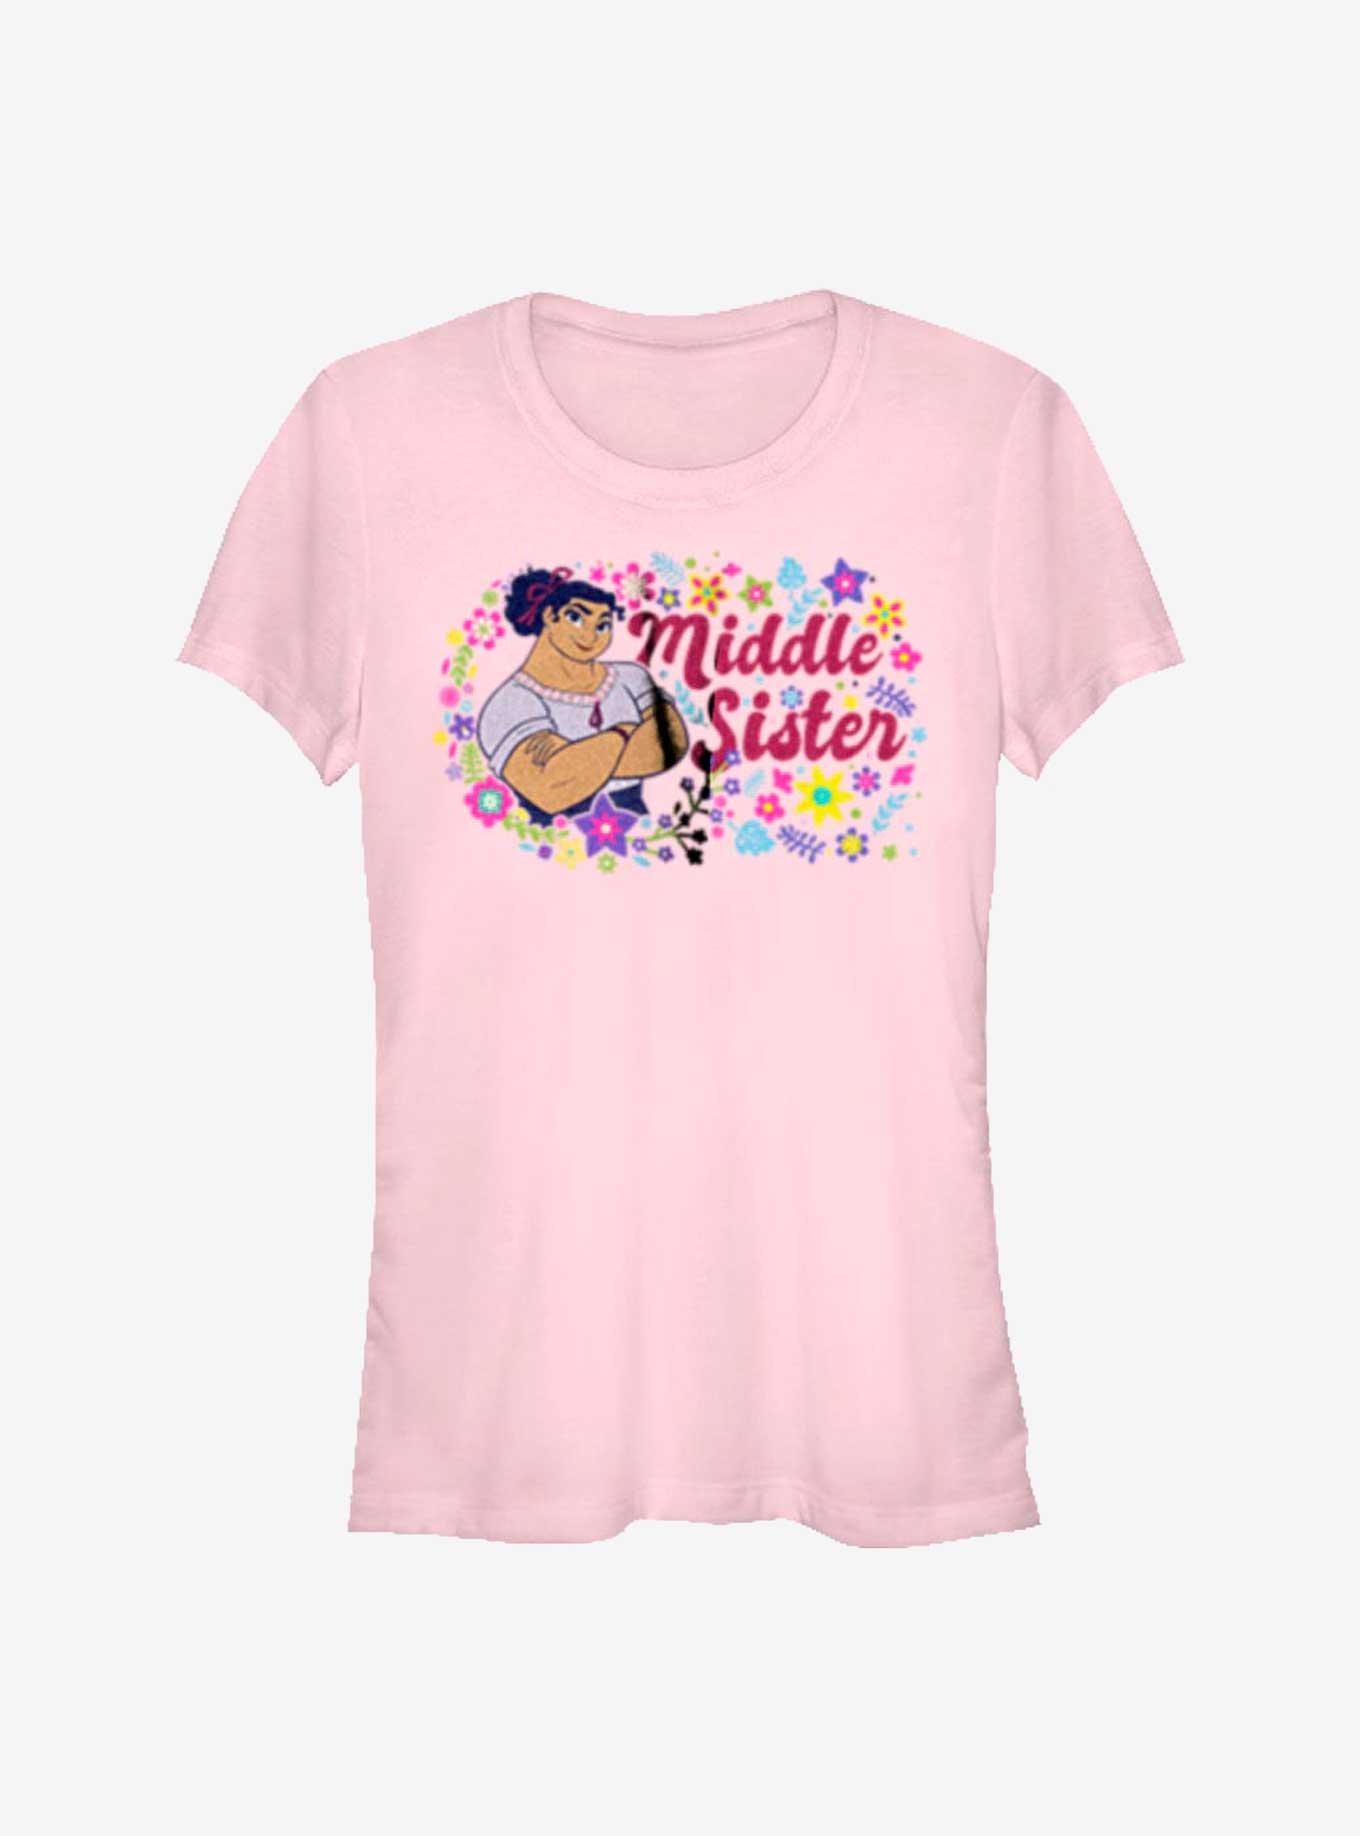 Disney Pixar Encanto Middle Sister Luisa Girls T-Shirt